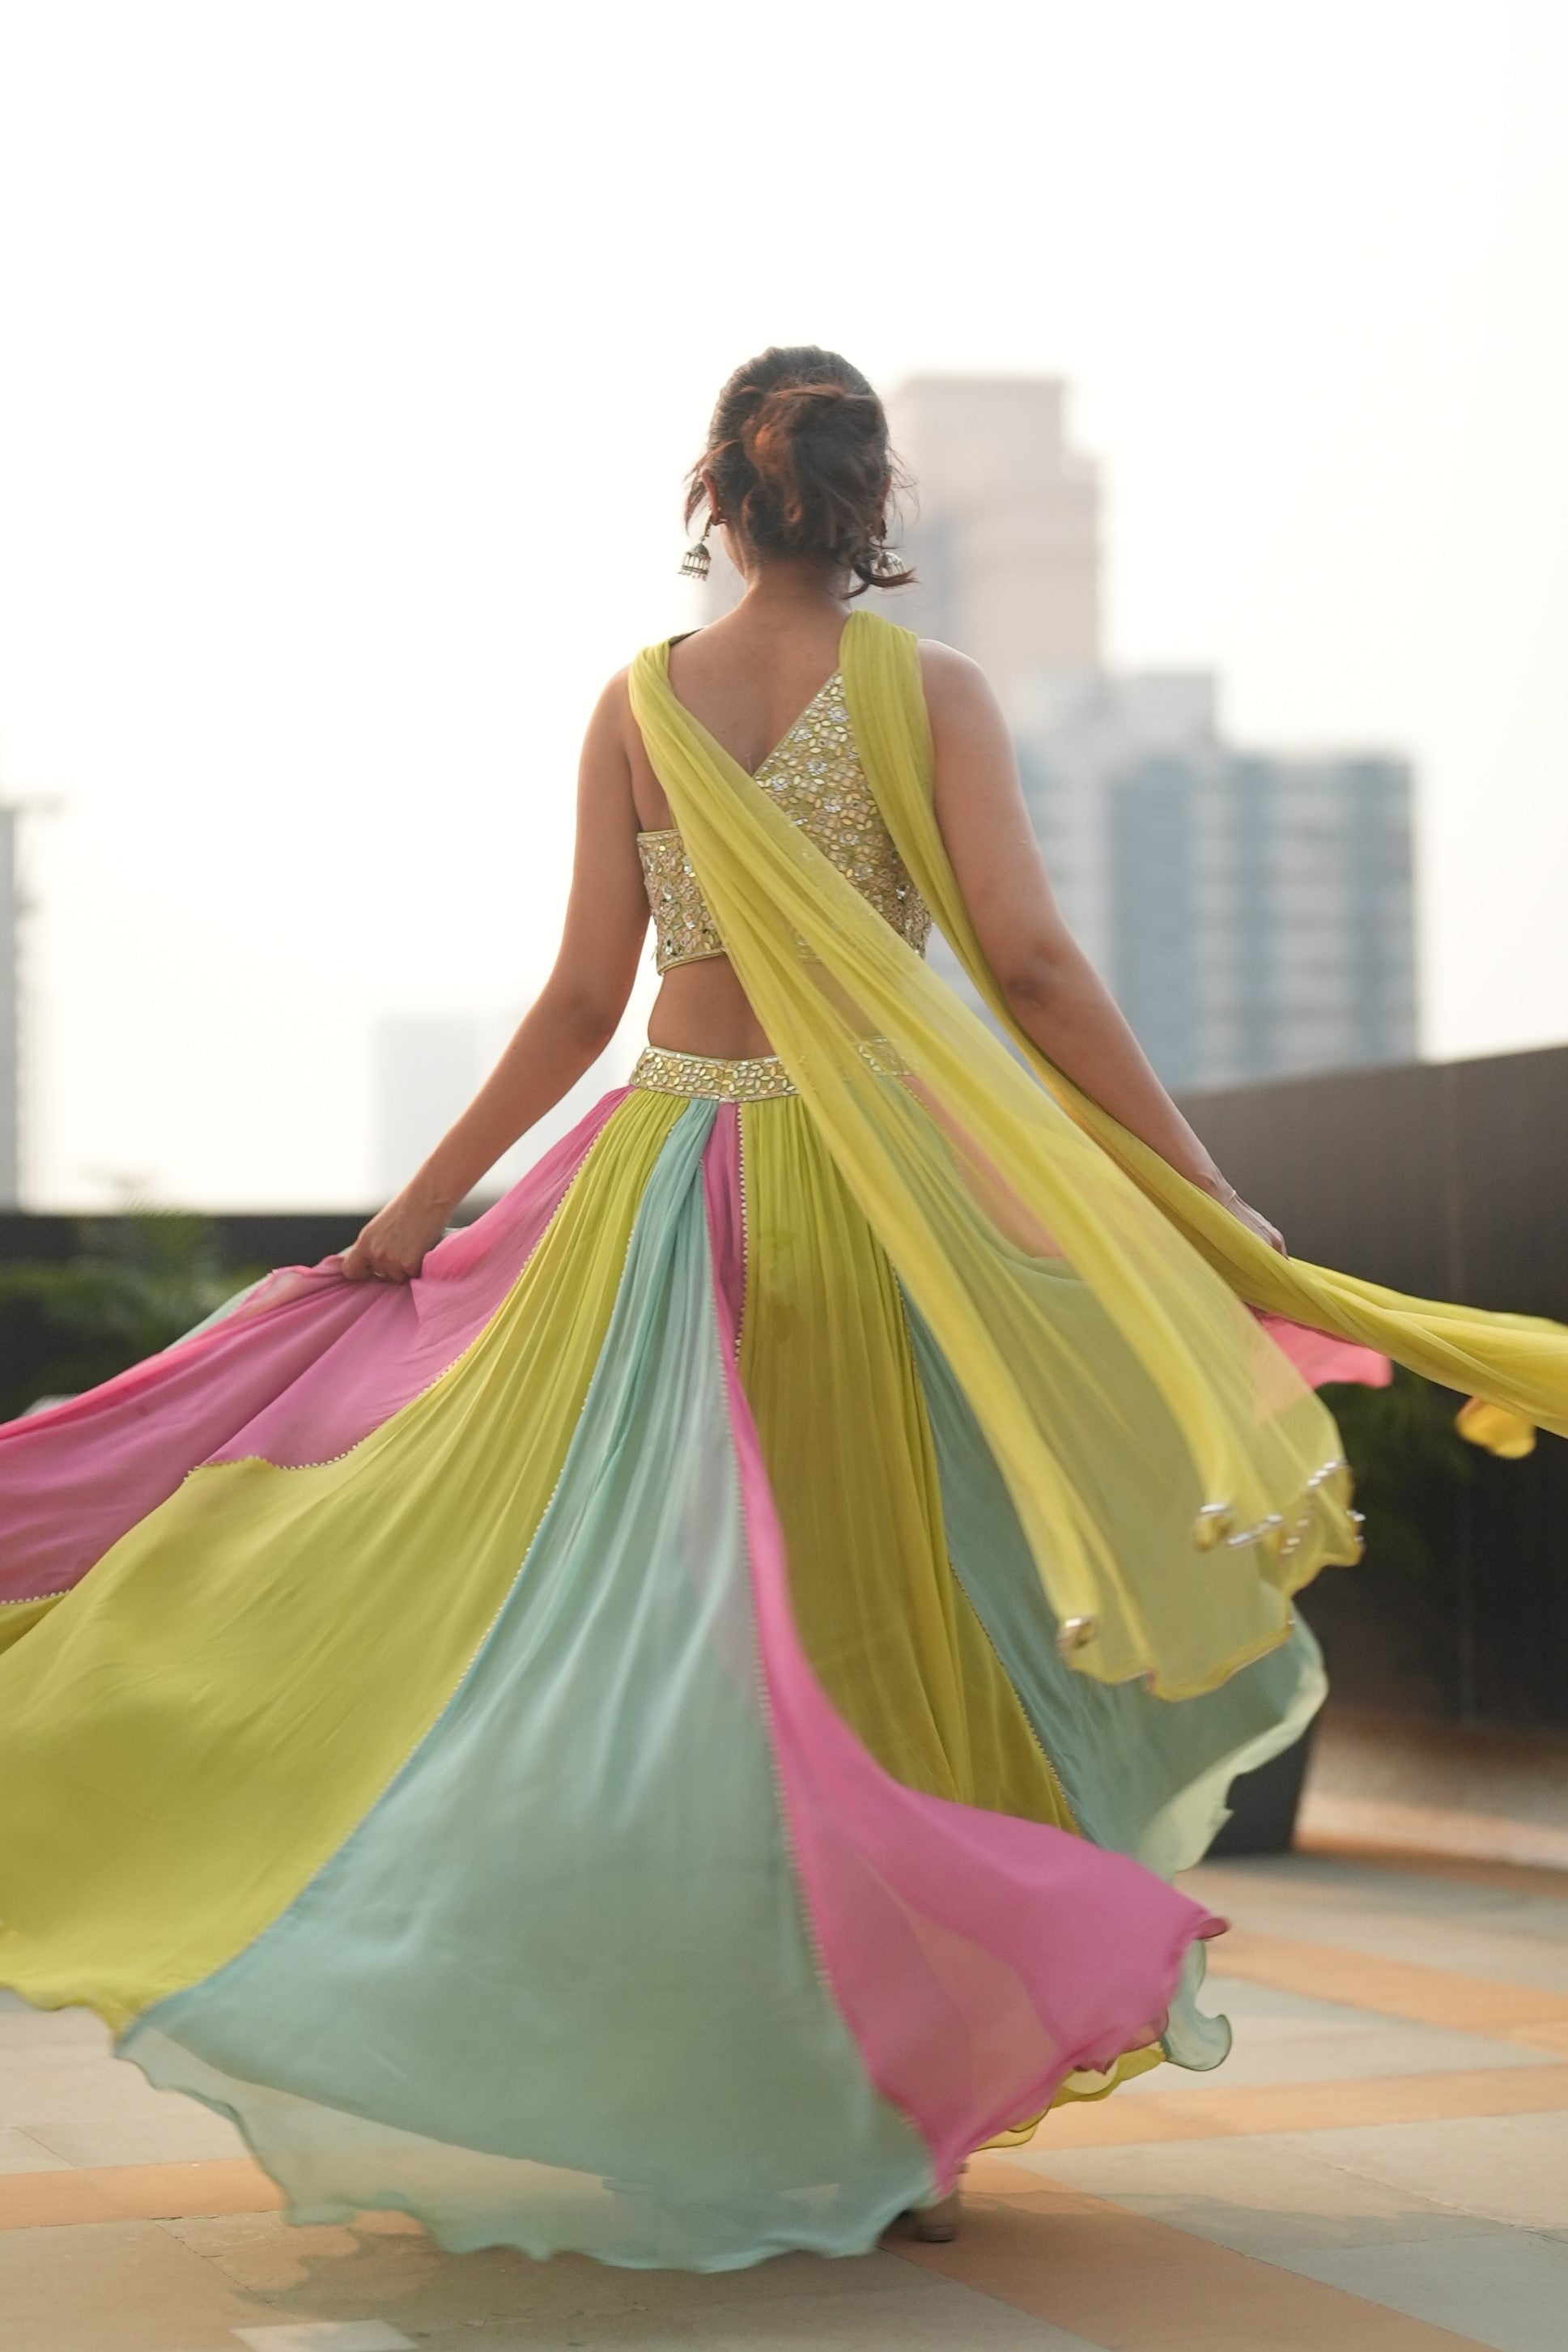 Designer Wear Lehenga Choli - Jasmin Bhasin's Choice